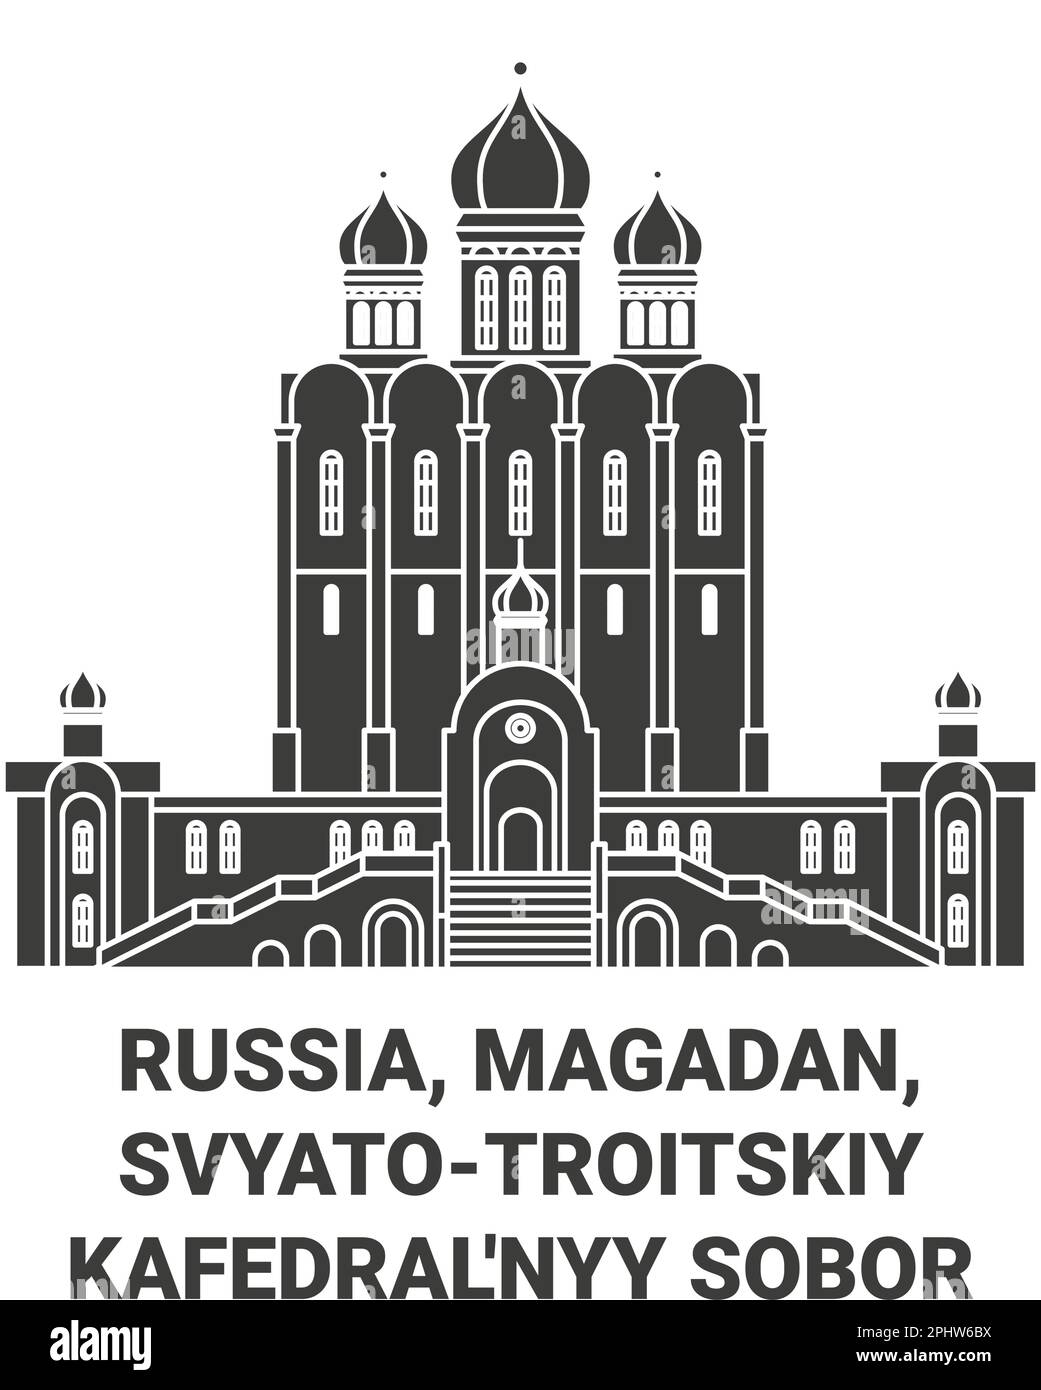 Russia, Magadan, Svyatotroitskiy Kafedral'nyy Sobor travel landmark vector illustration Stock Vector